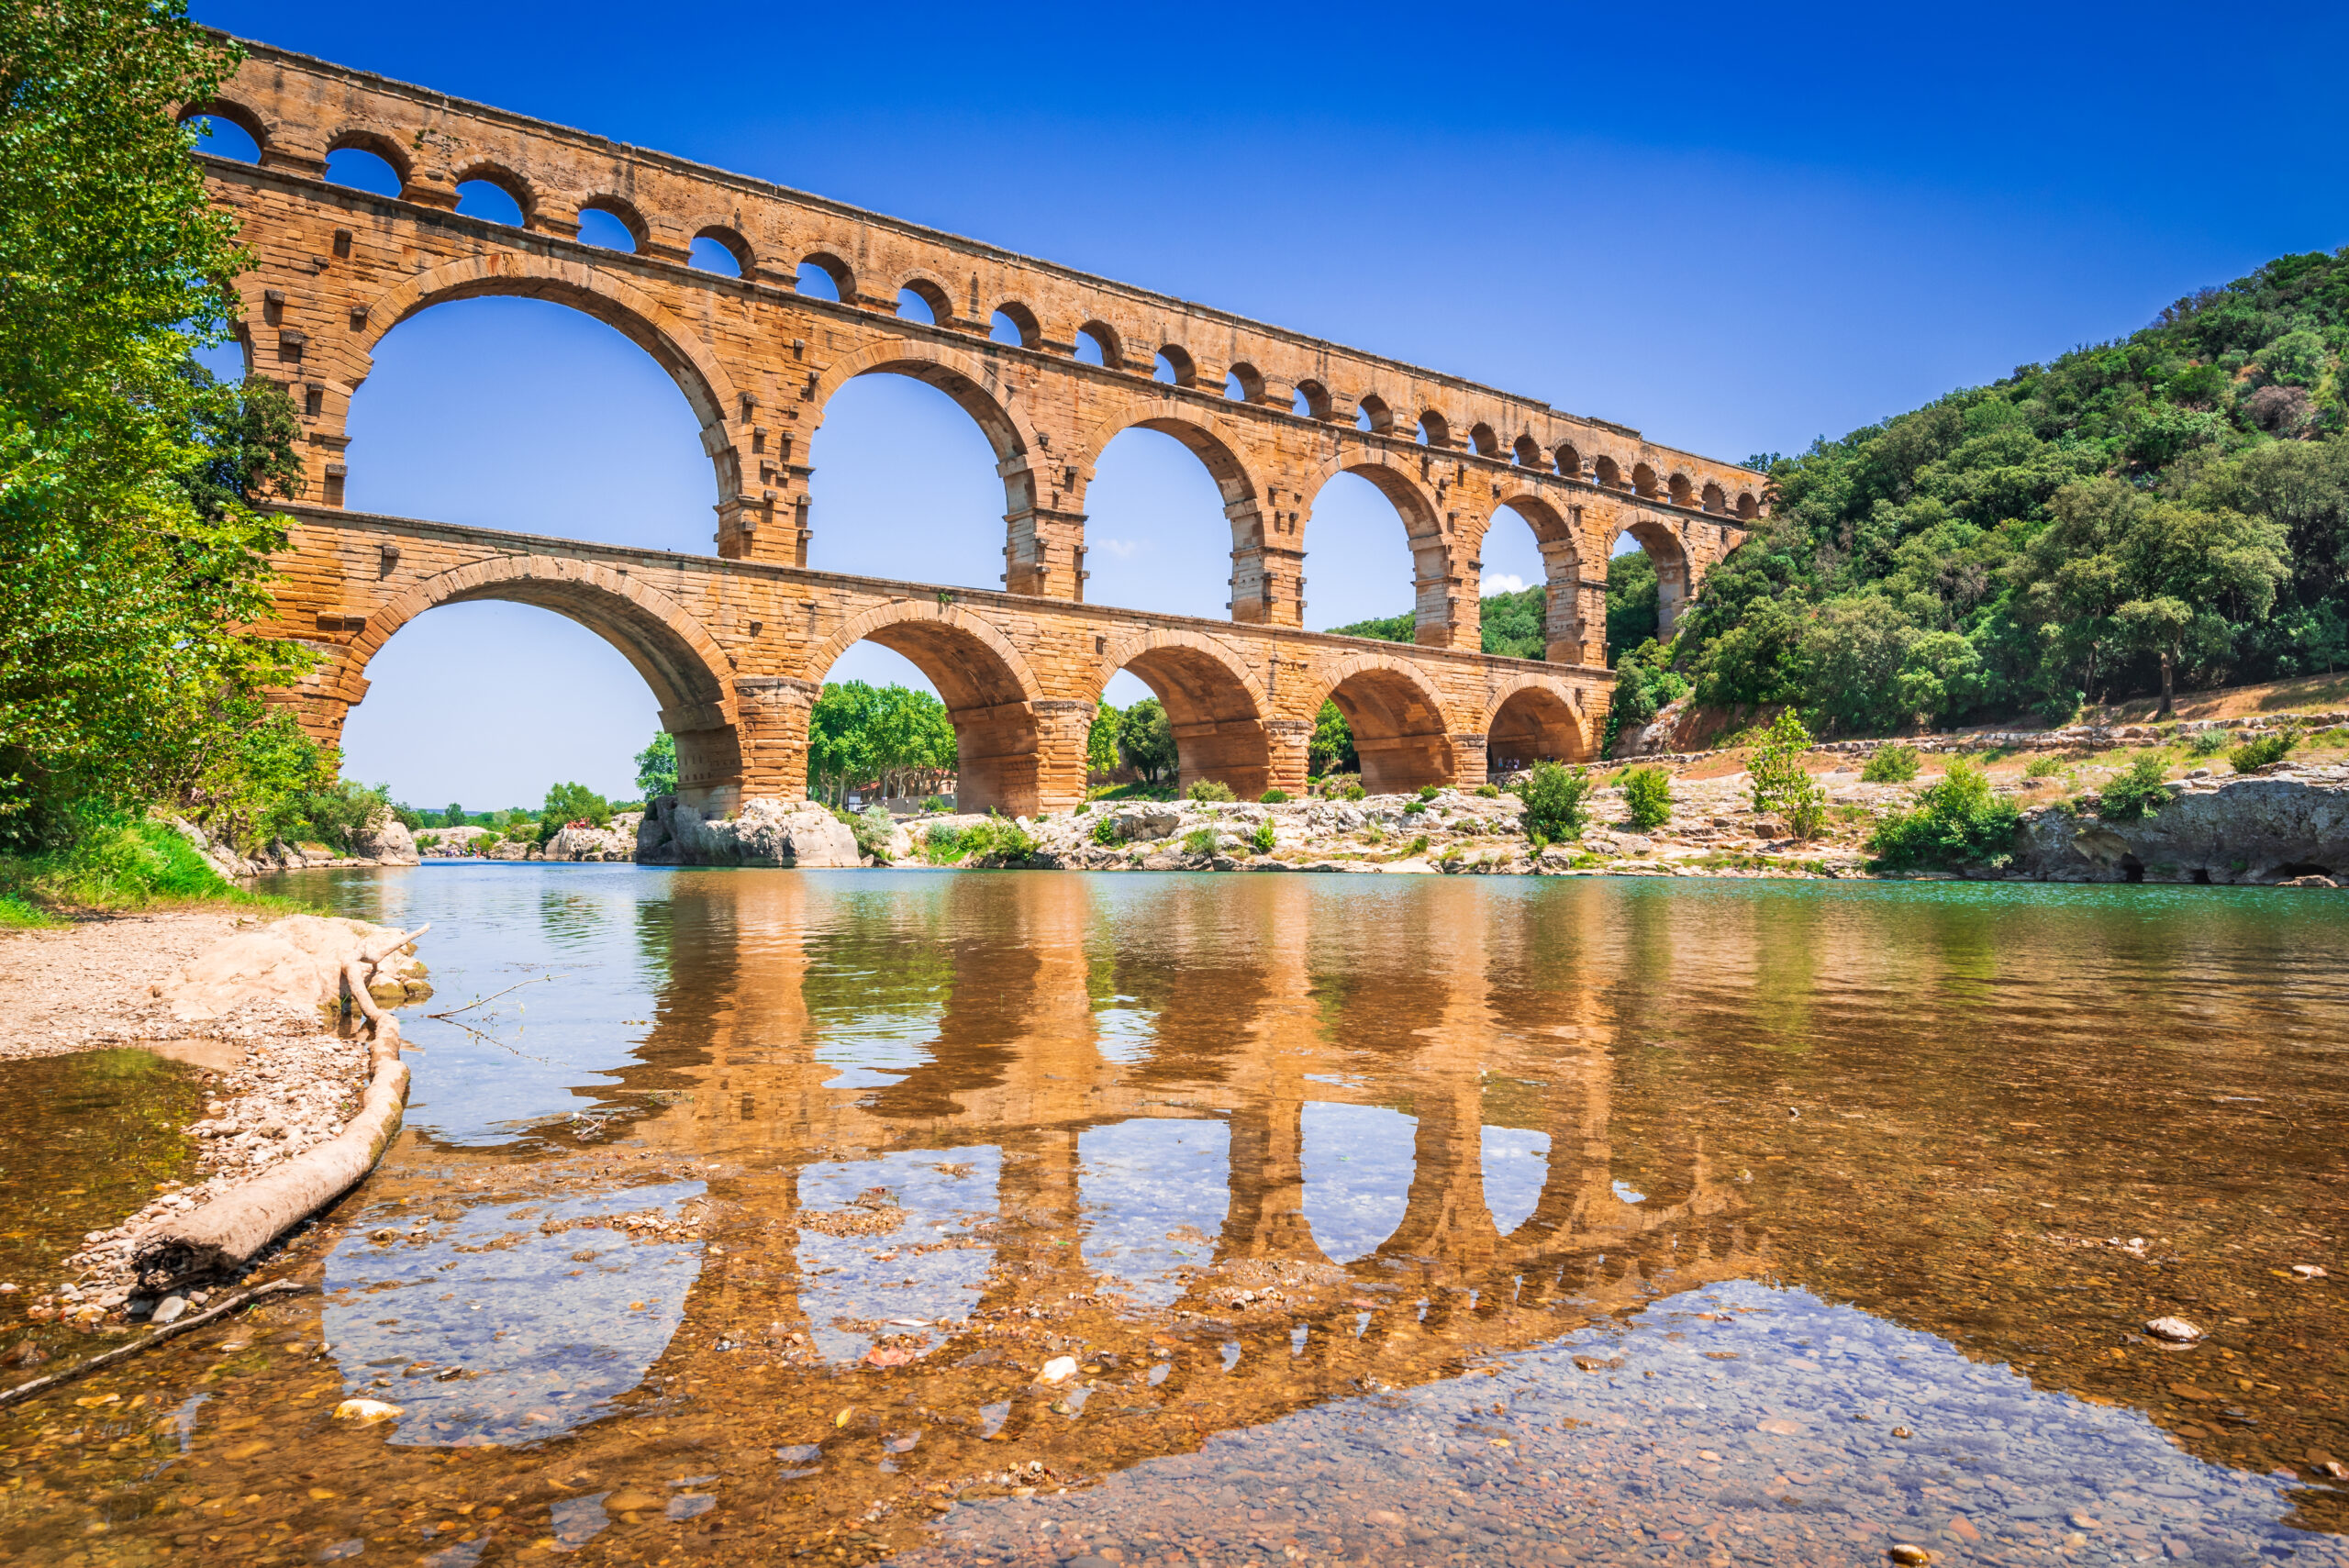 Pont du Gard via Shutterstock.